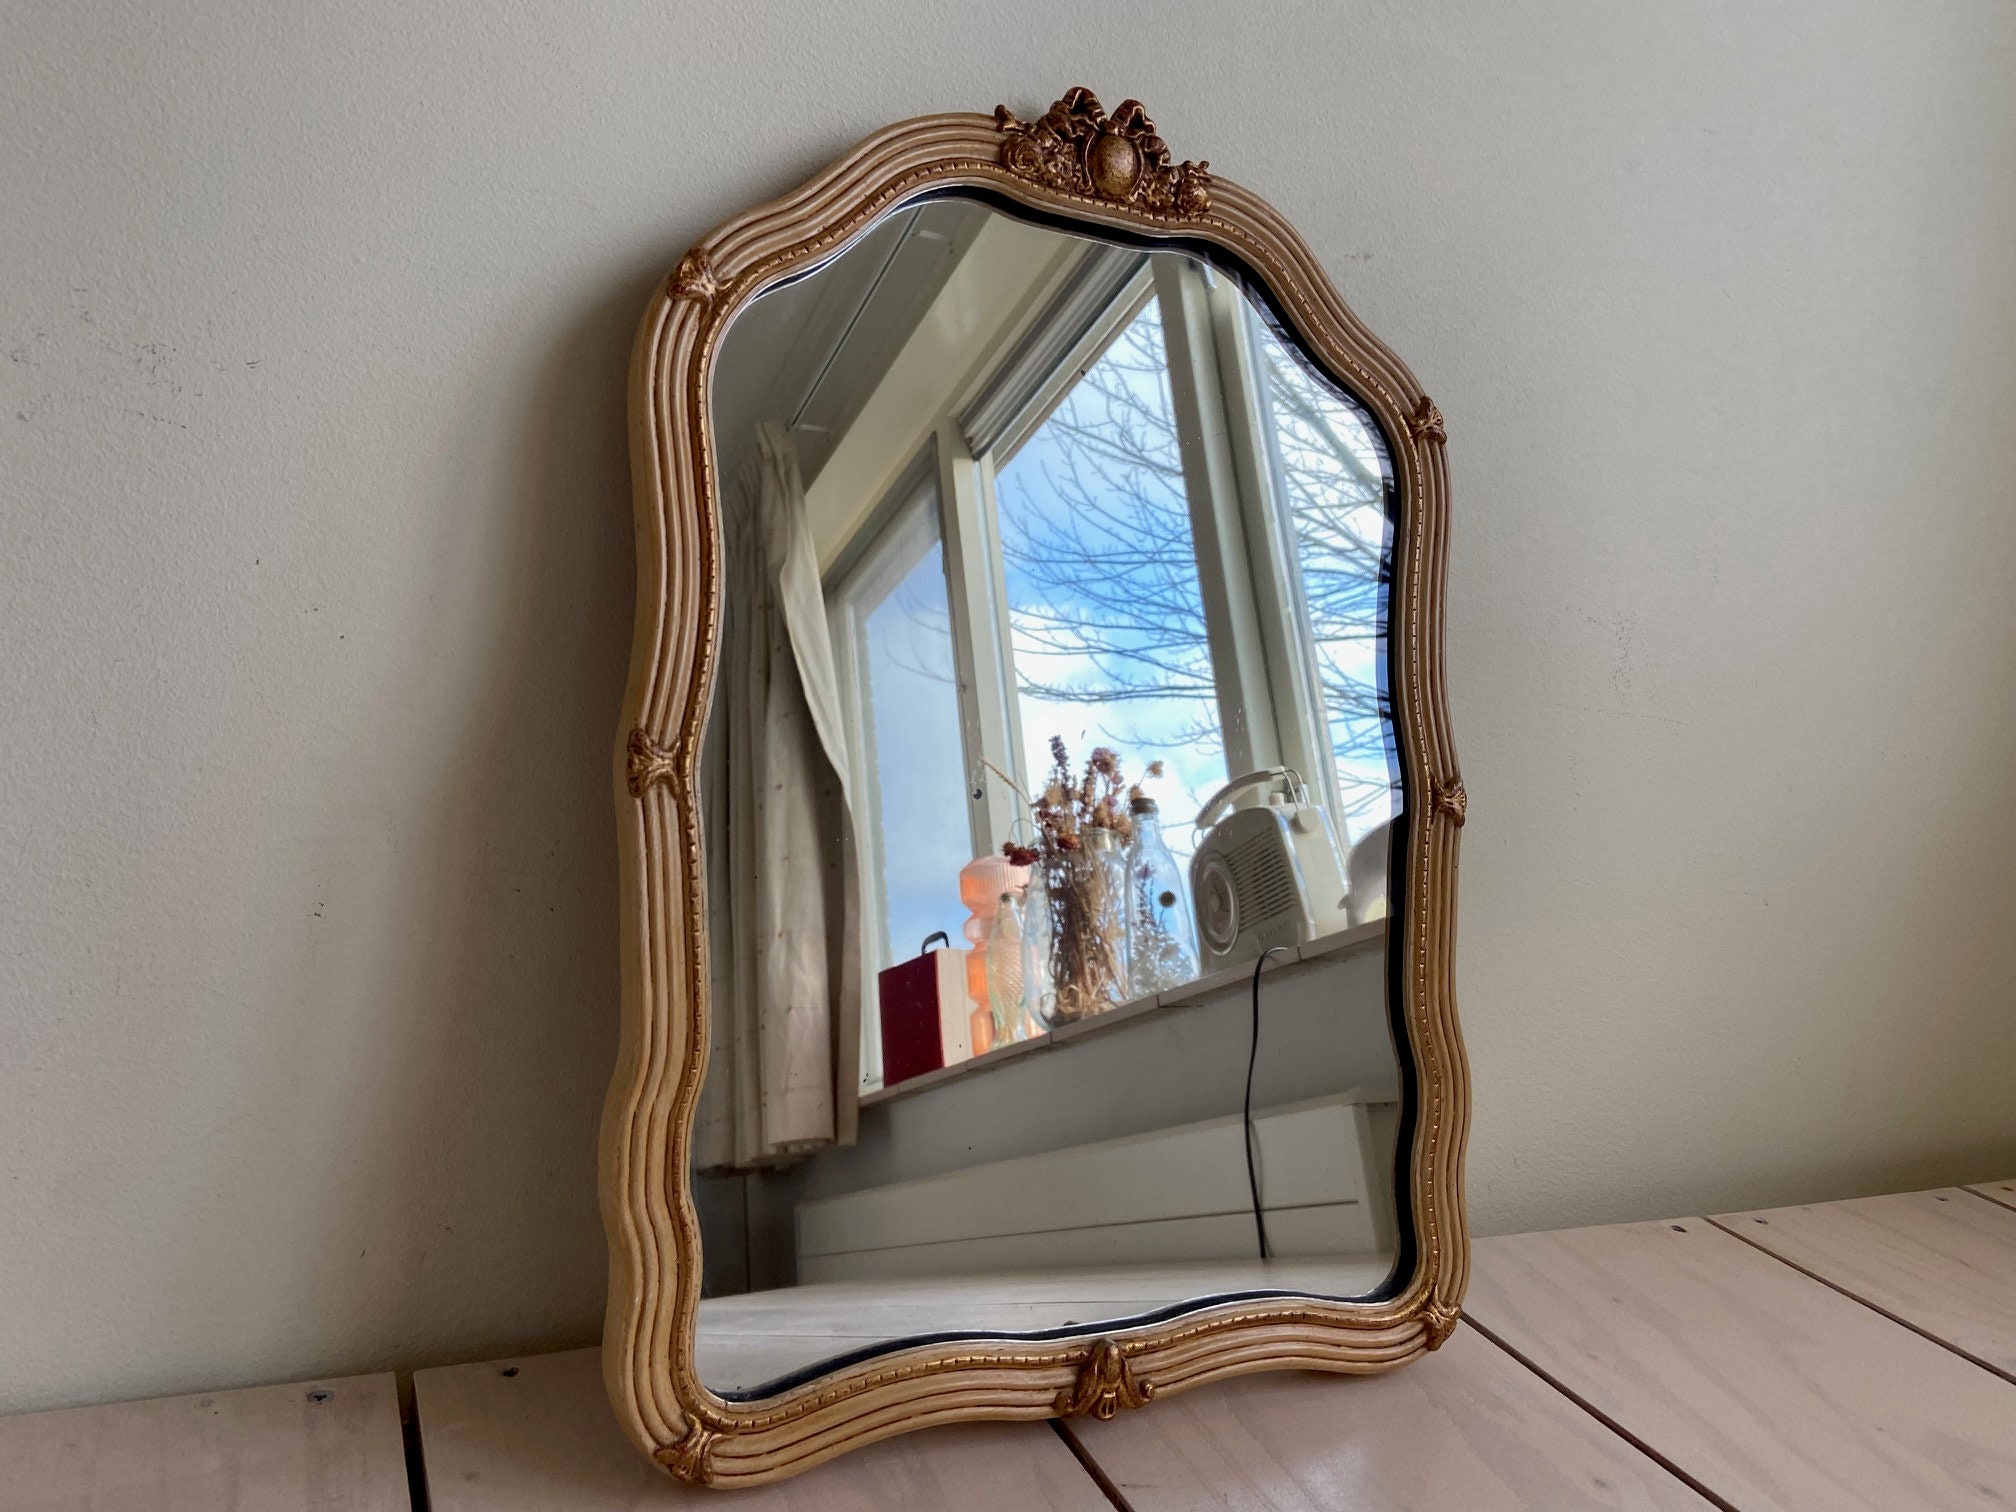 Specchio vintage da parete 59x48x3 cm Specchio da parete in legno massello  Specchio bagno e specchio camera da letto